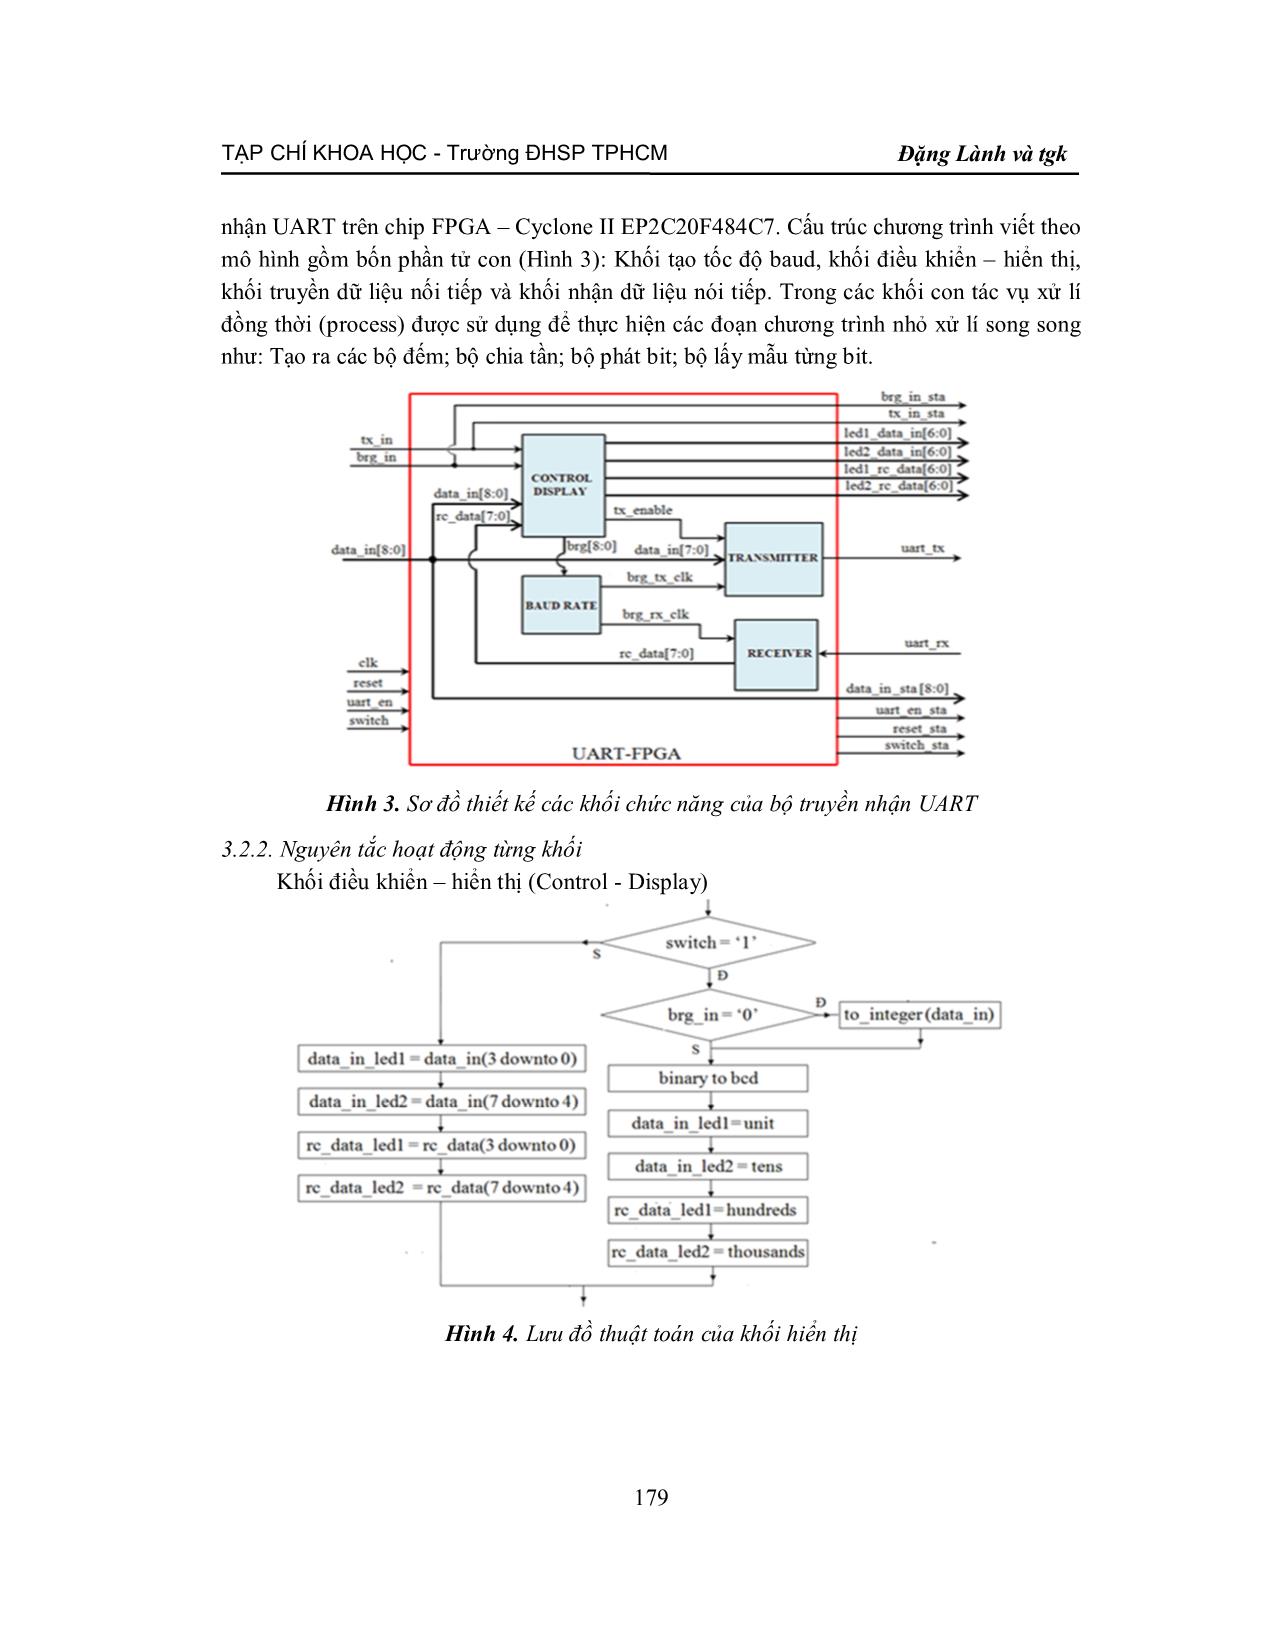 Ứng dụng công nghệ FPGA để thiết kế bộ truyền, nhận dữ liệu giao tiếp với máy tính trên thiết bị DE1 qua đường truyền UART trang 4